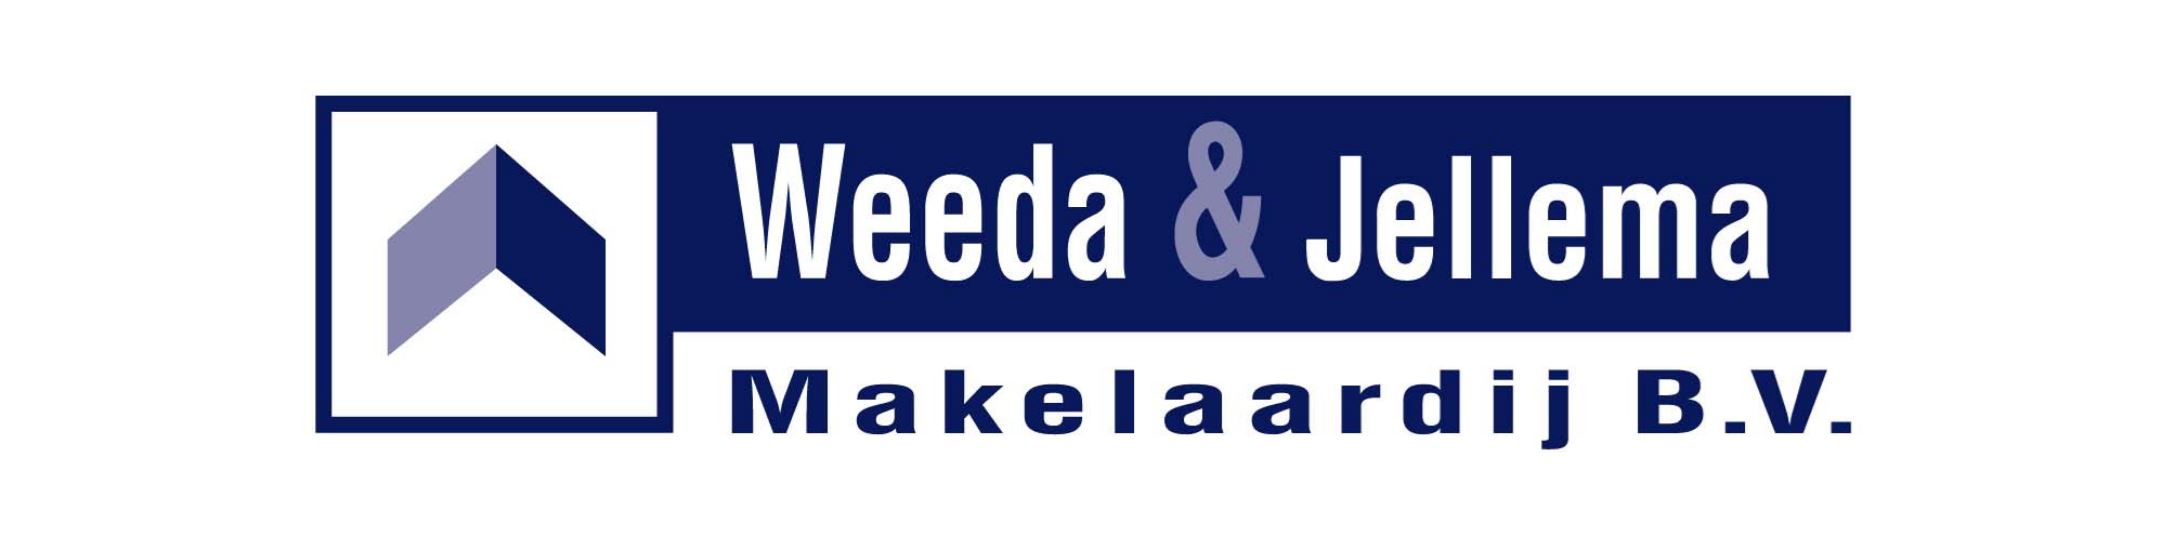 Banner Weeda & Jellema Makelaardij B.V.